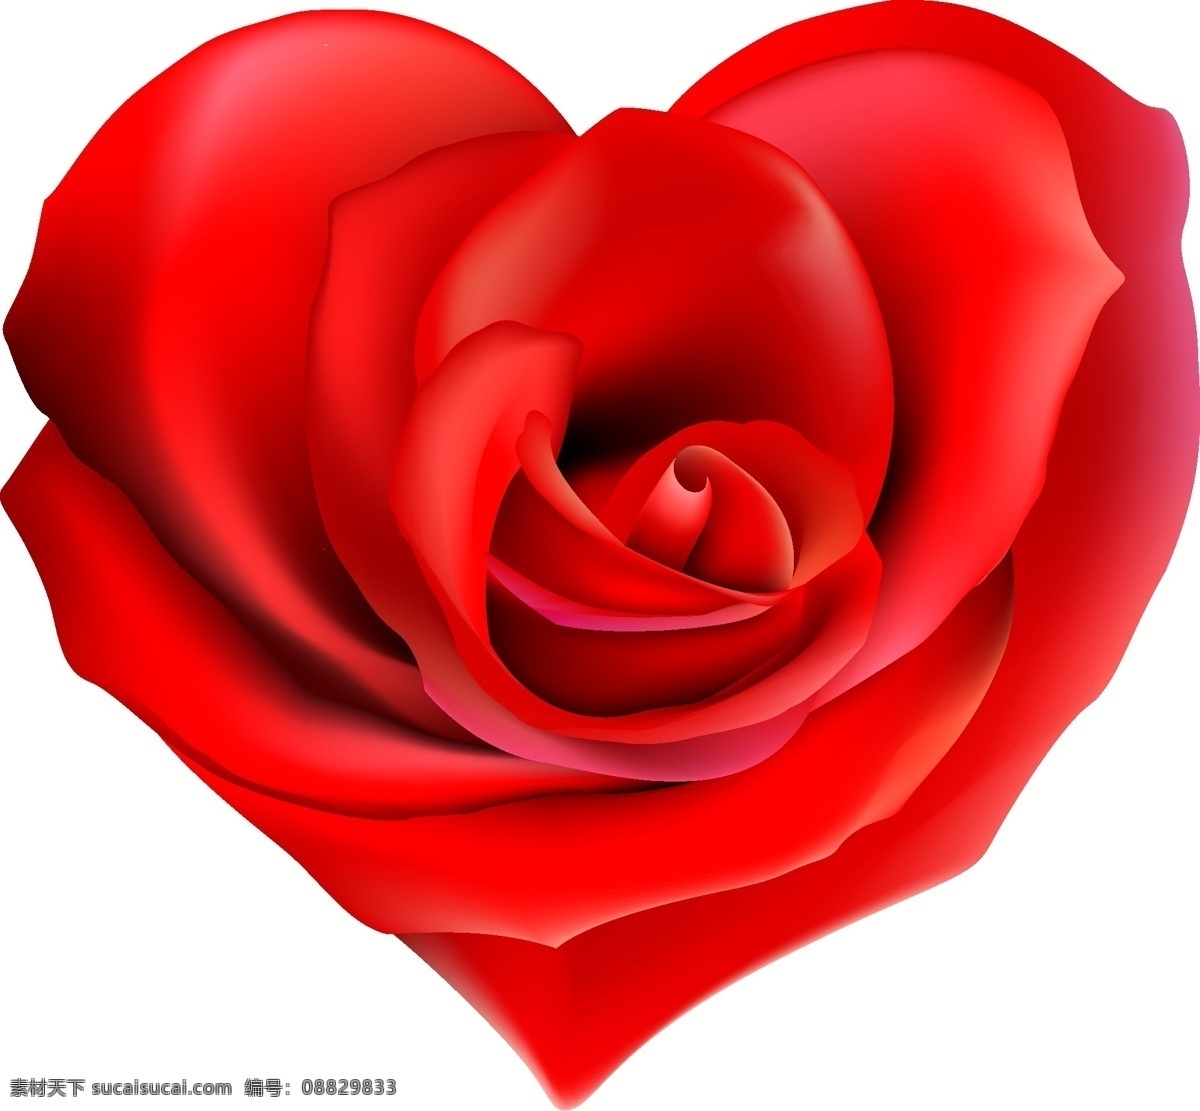 心 型 玫瑰花 爱情 爱心 心型 矢量图 生物世界